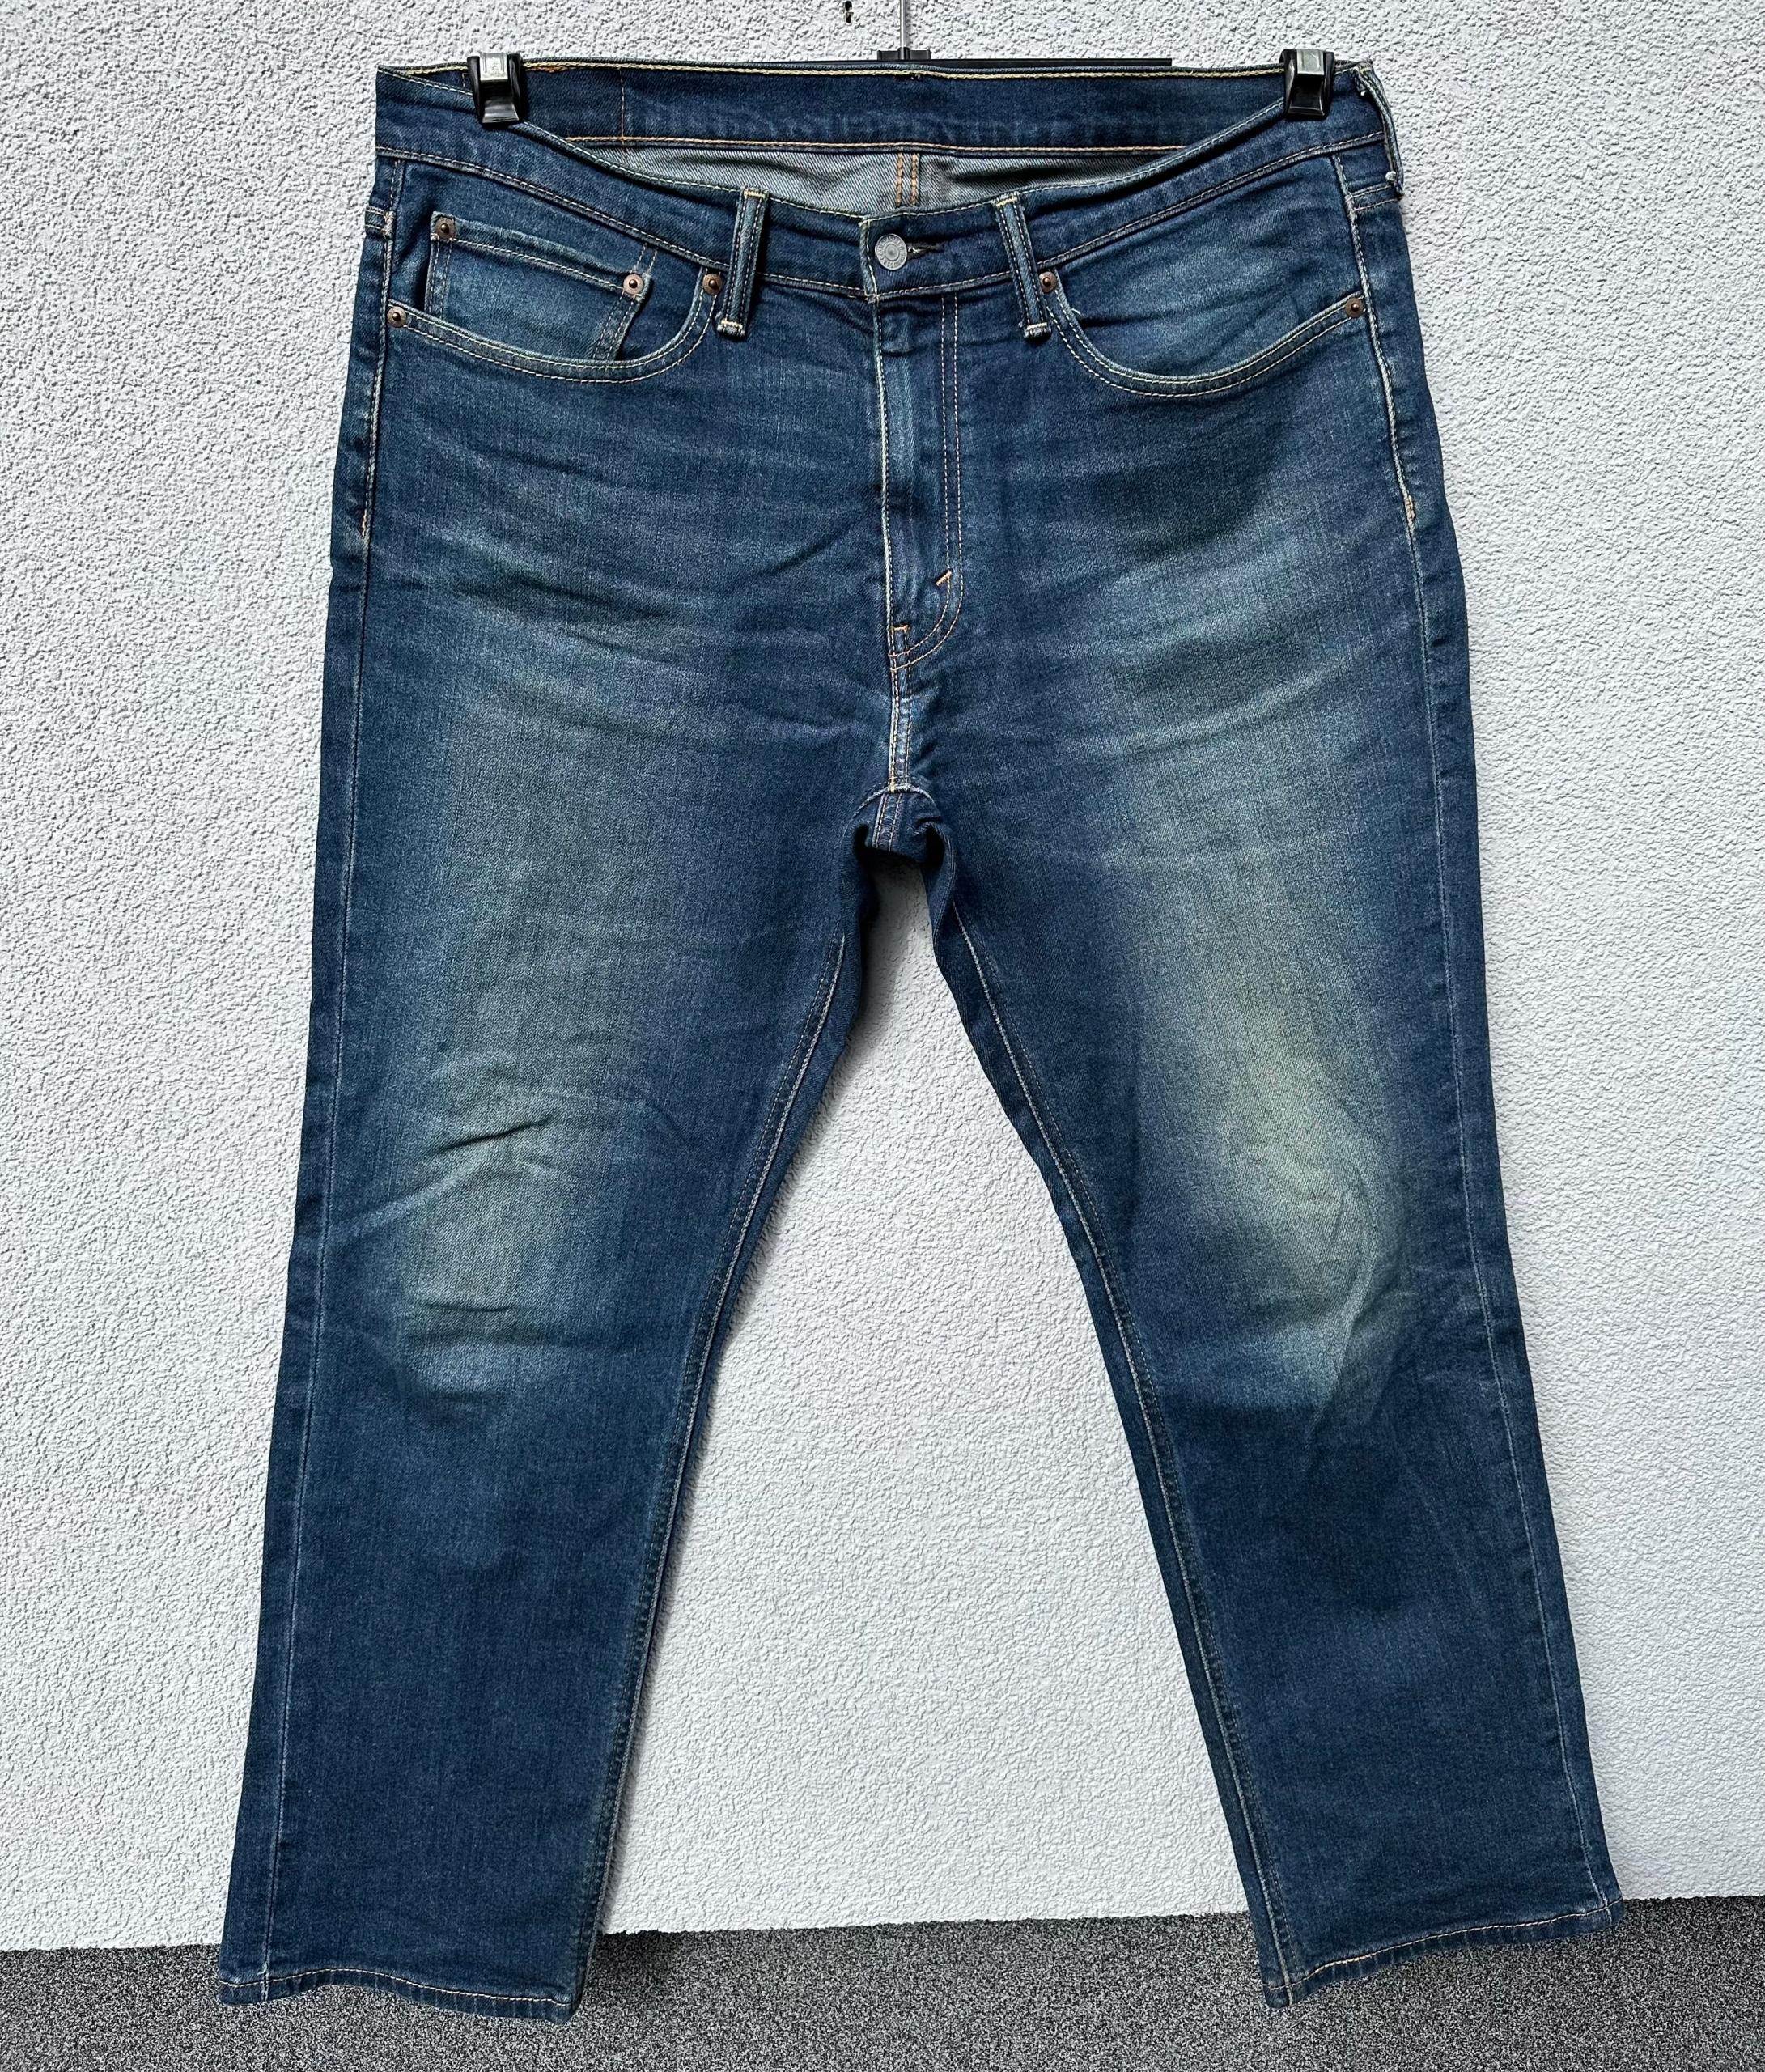 Levis 541 W34 L30 granatowe spodnie jeansowe Levi’s strauss